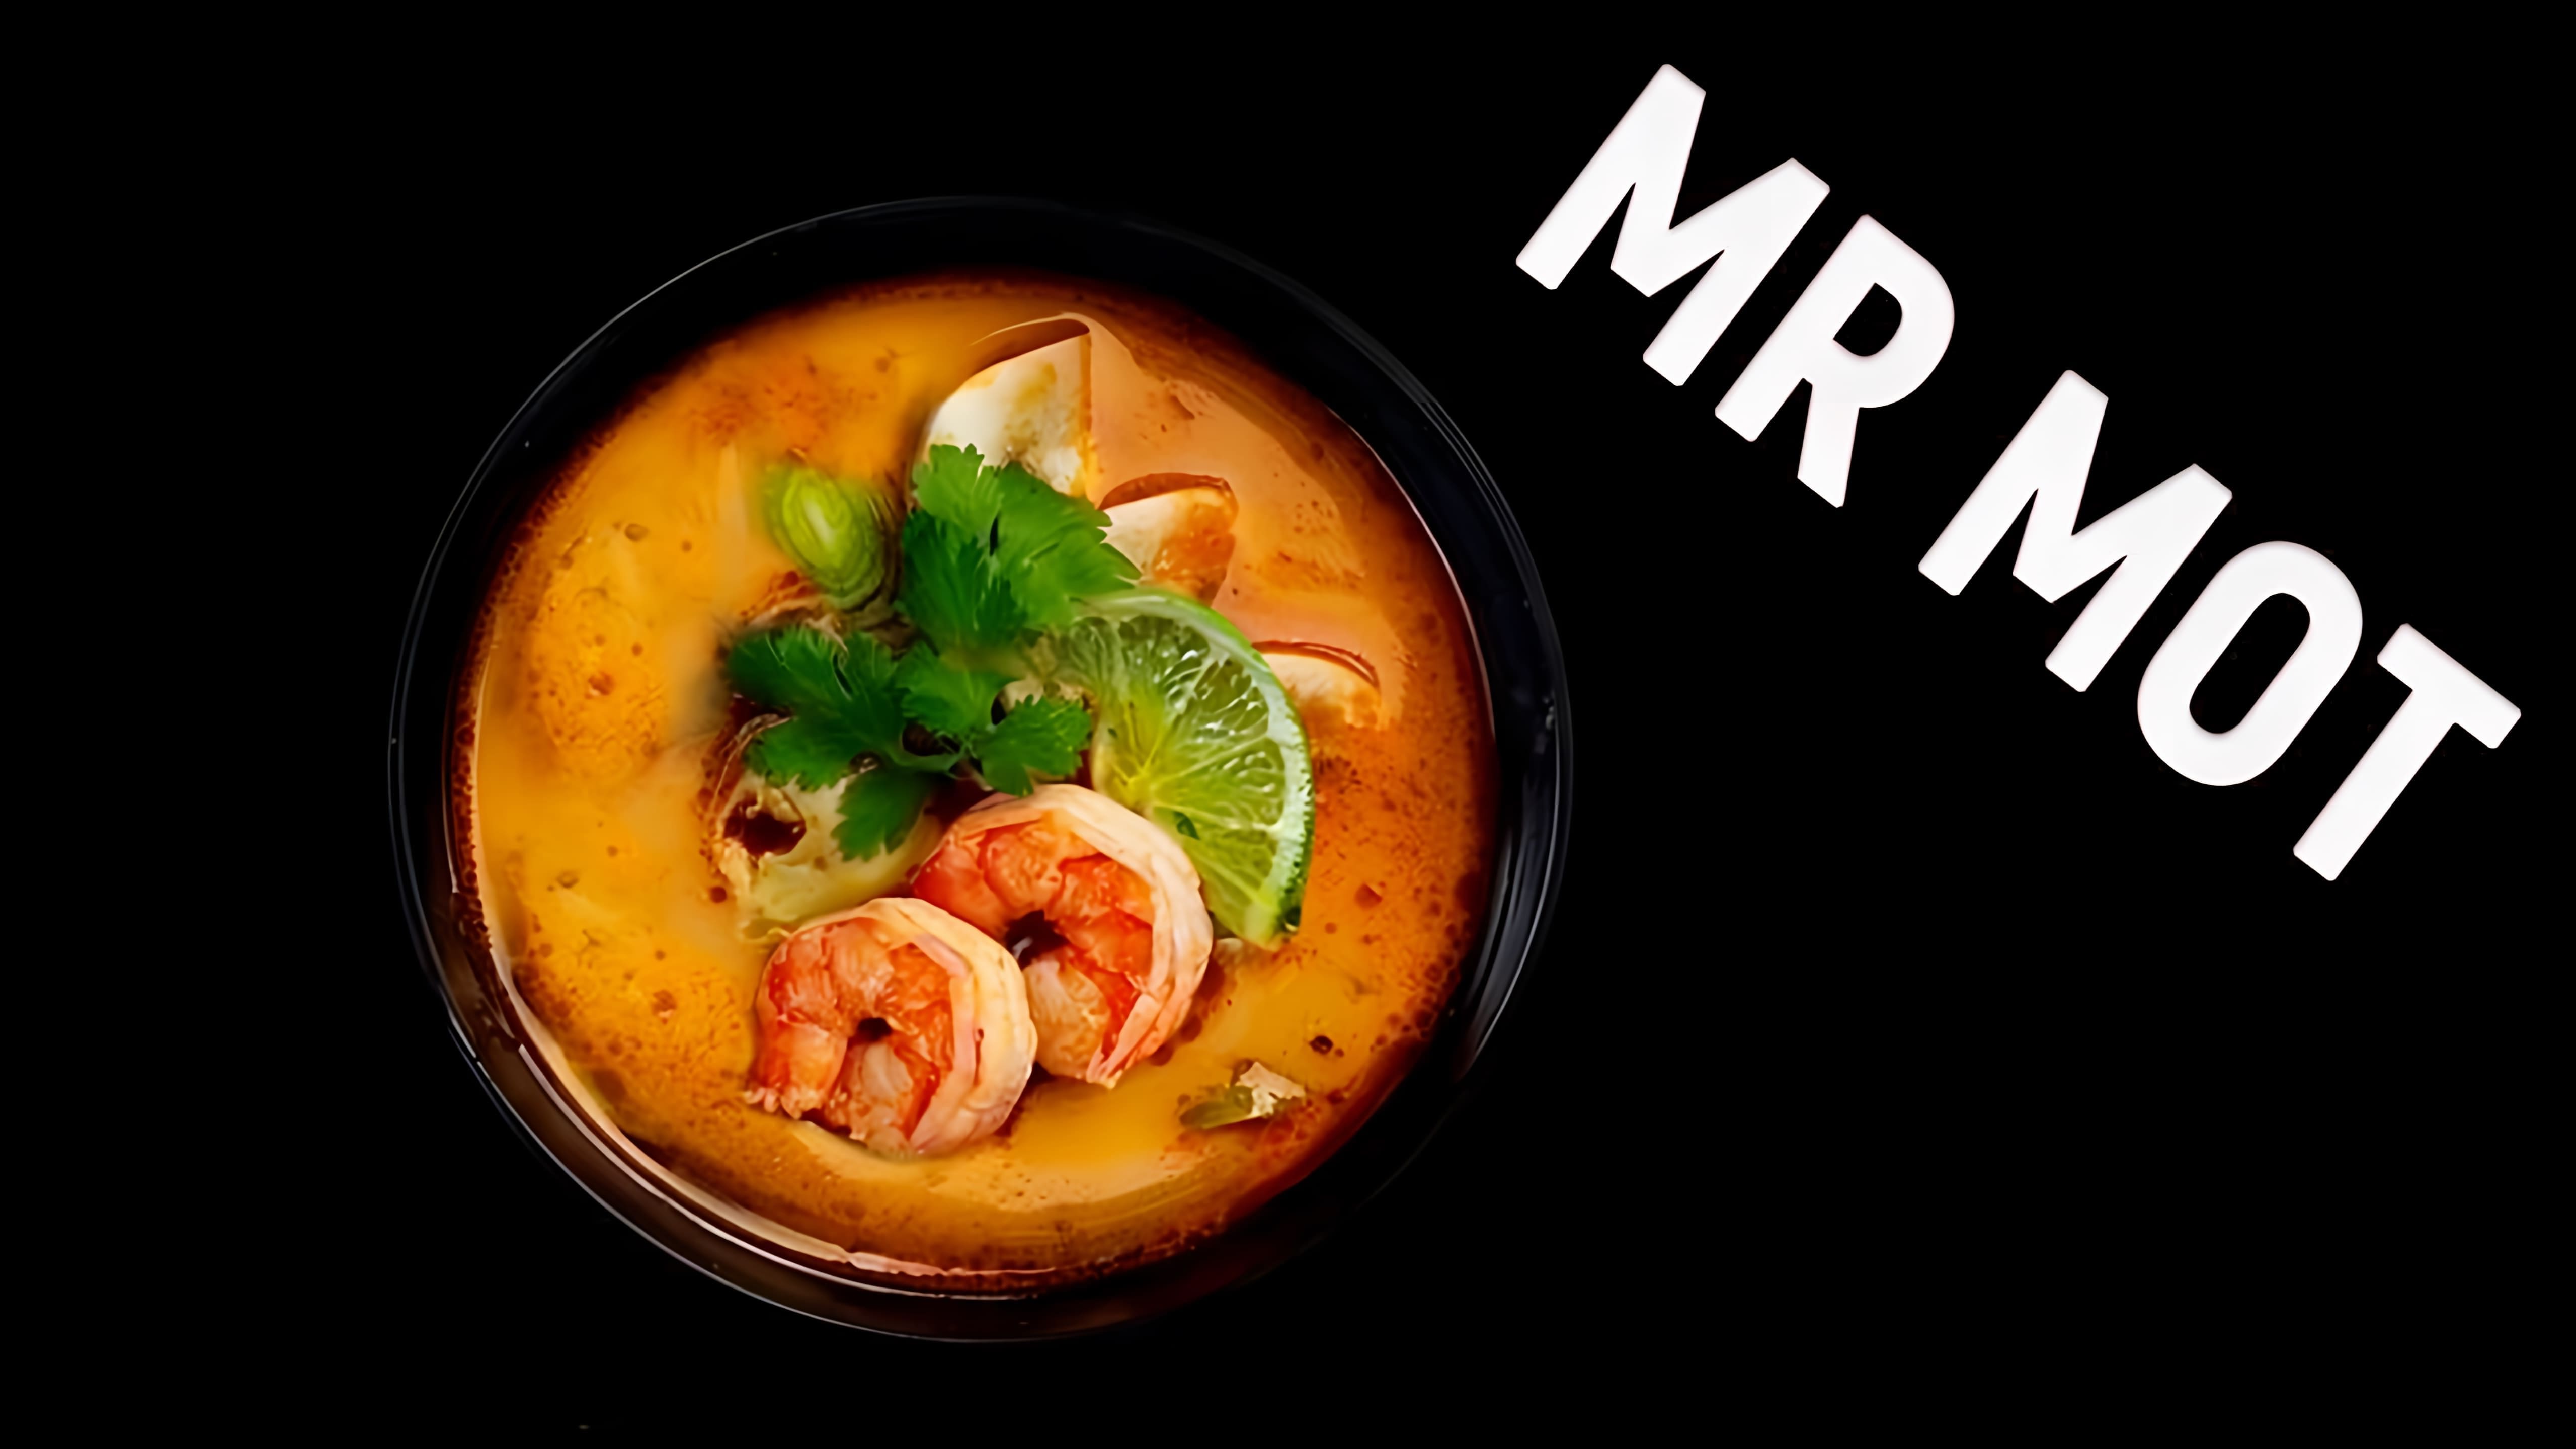 В этом видео демонстрируется рецепт приготовления супа Том Ям дома, как в ресторане